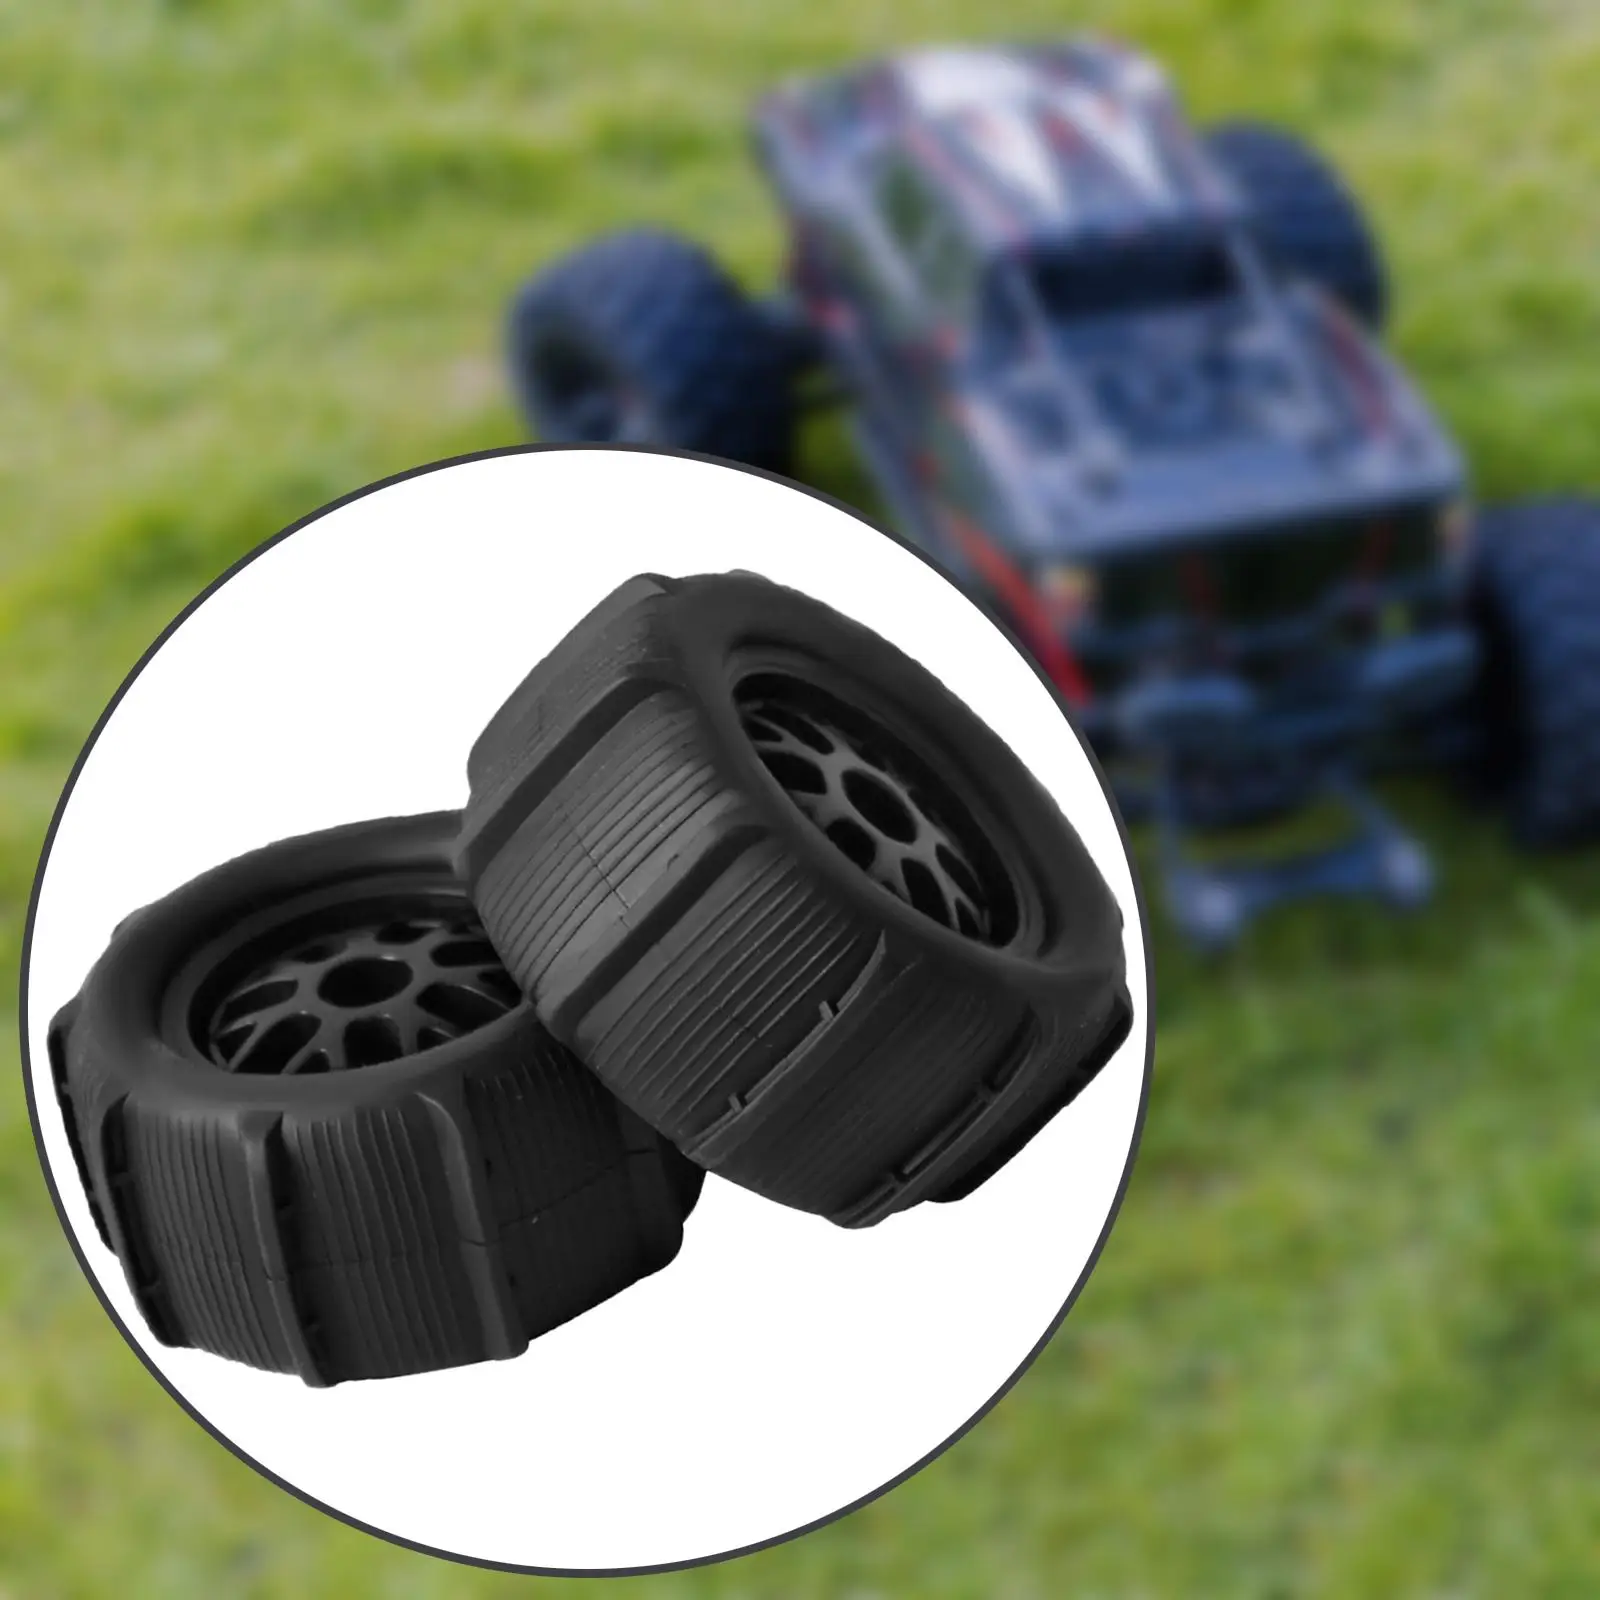 2 штуки радиоуправляемых колес и шин для 1/14 1/16 гусеничных аксессуаров с противоскользящим эффектом, Прочные запасные части для обновления радиоуправляемых шин/колес